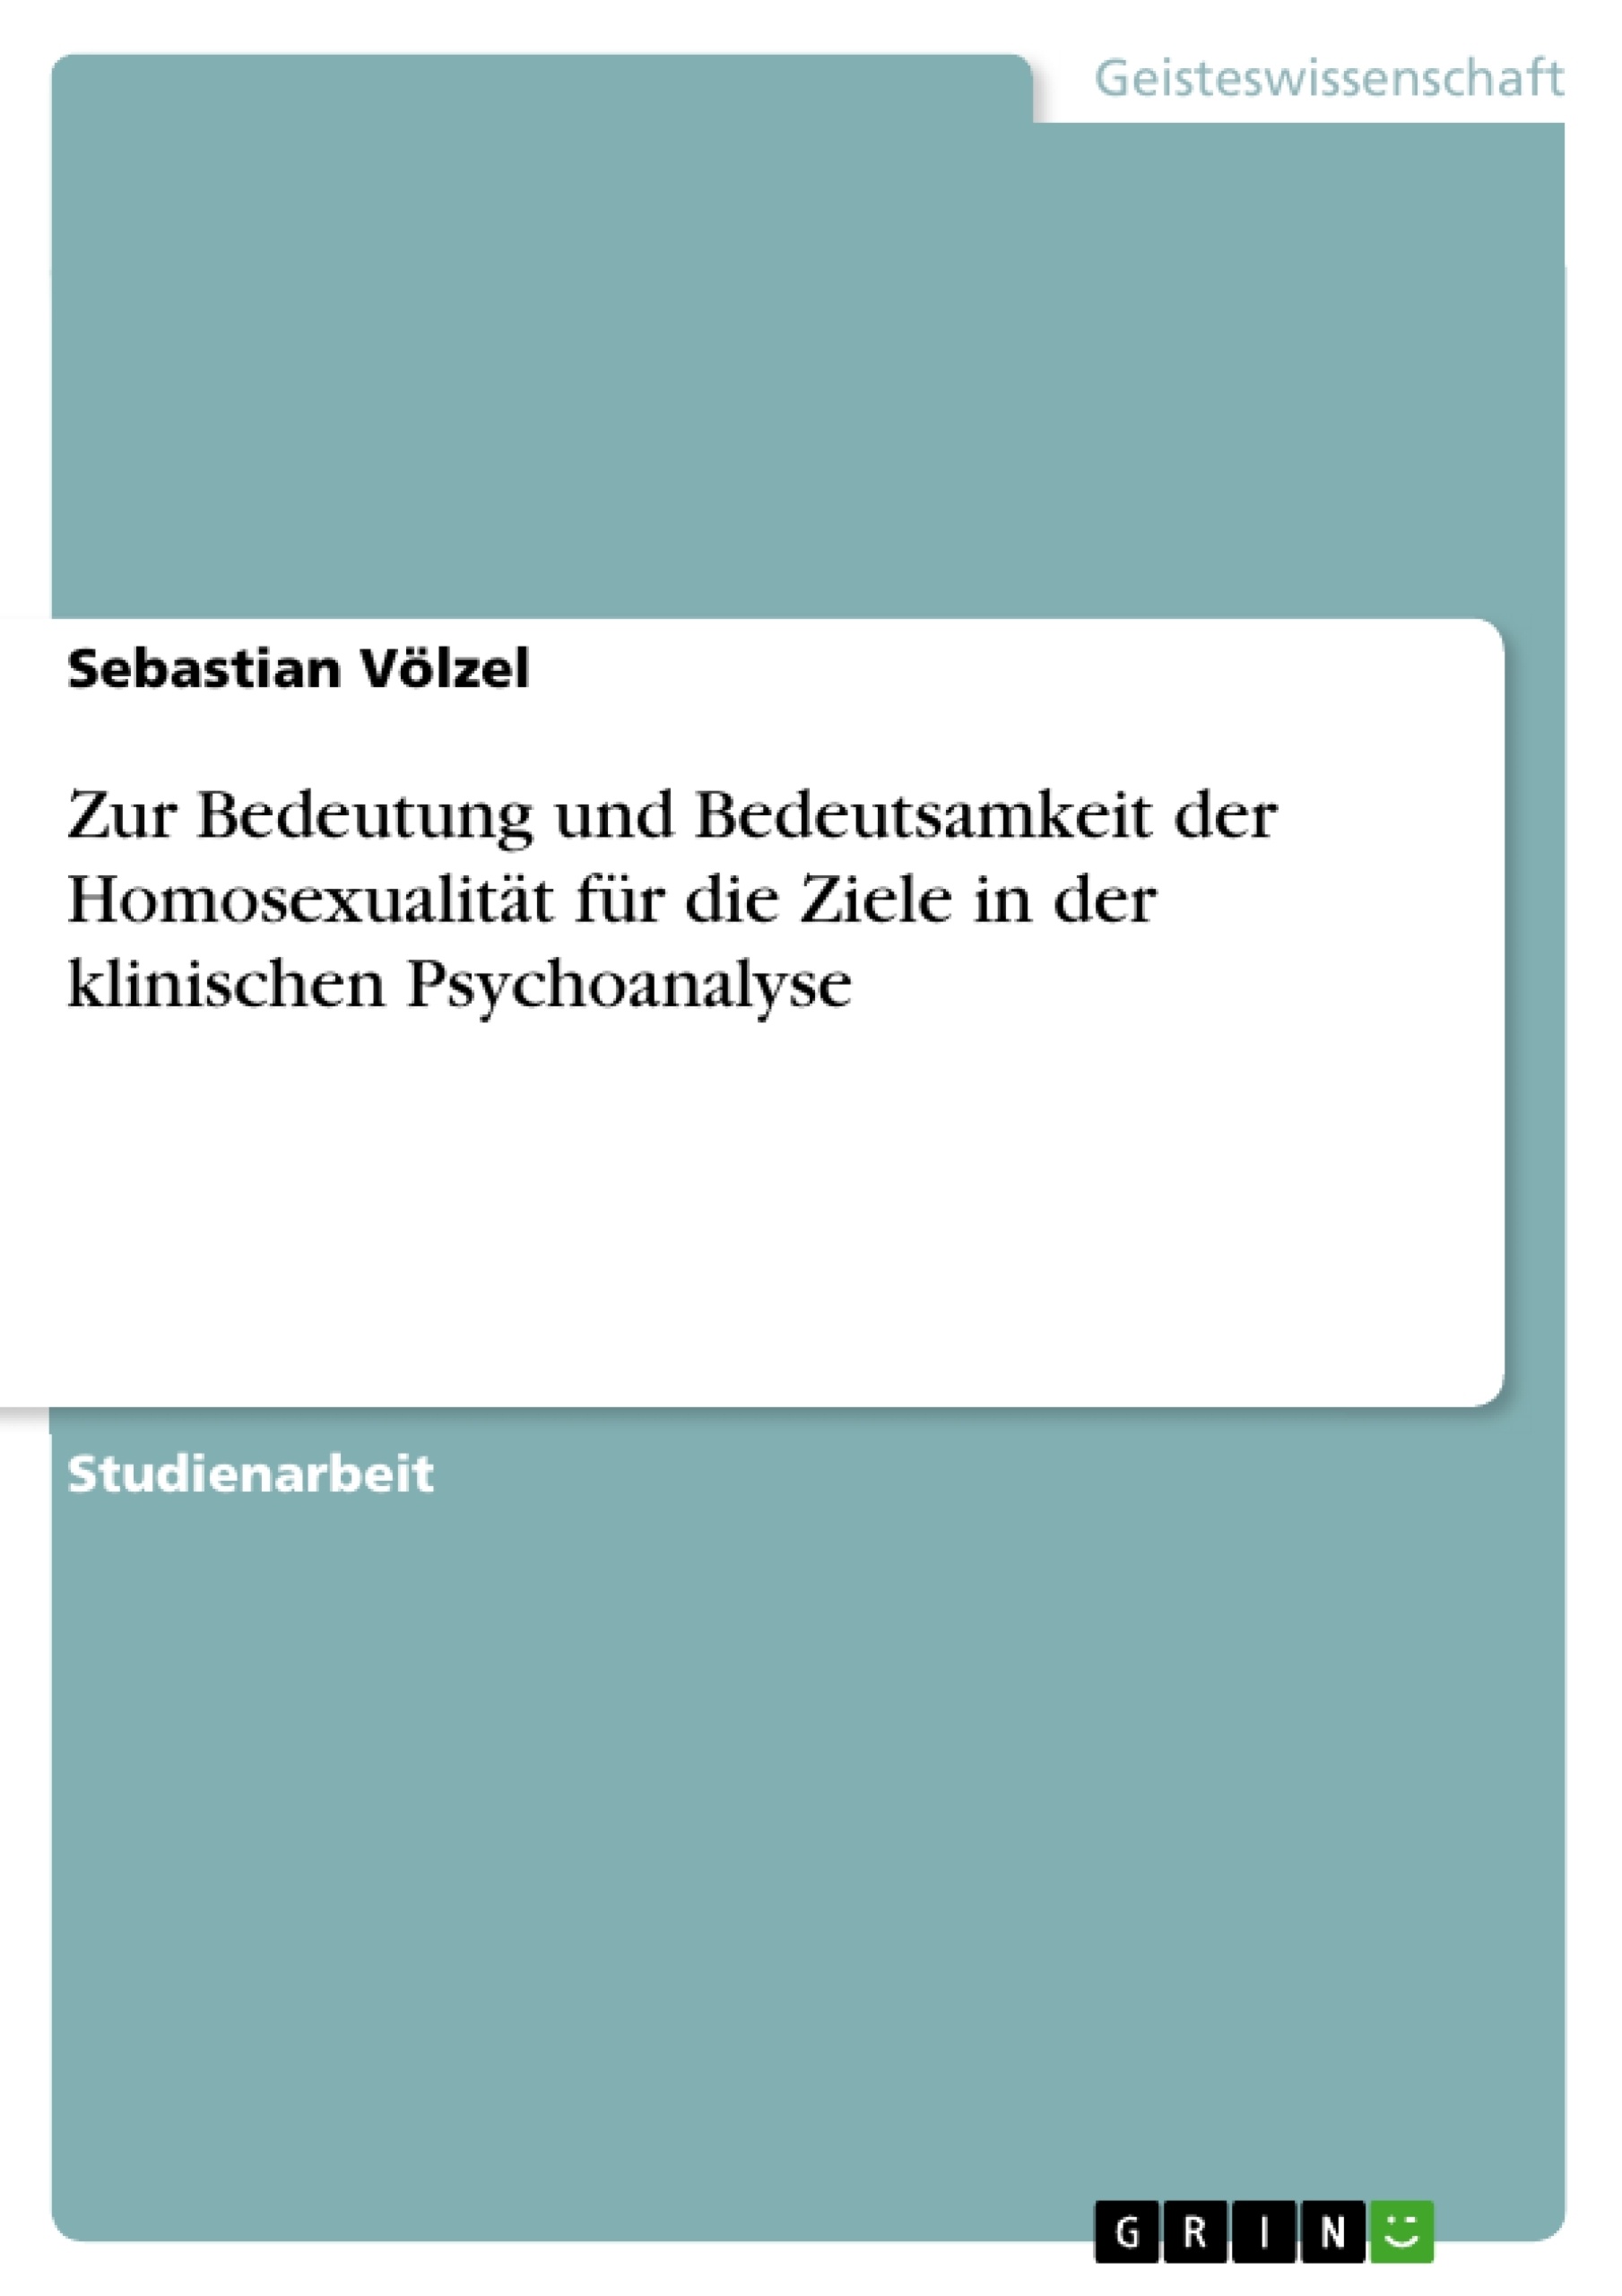 Título: Zur Bedeutung und Bedeutsamkeit der Homosexualität für die Ziele in der klinischen Psychoanalyse